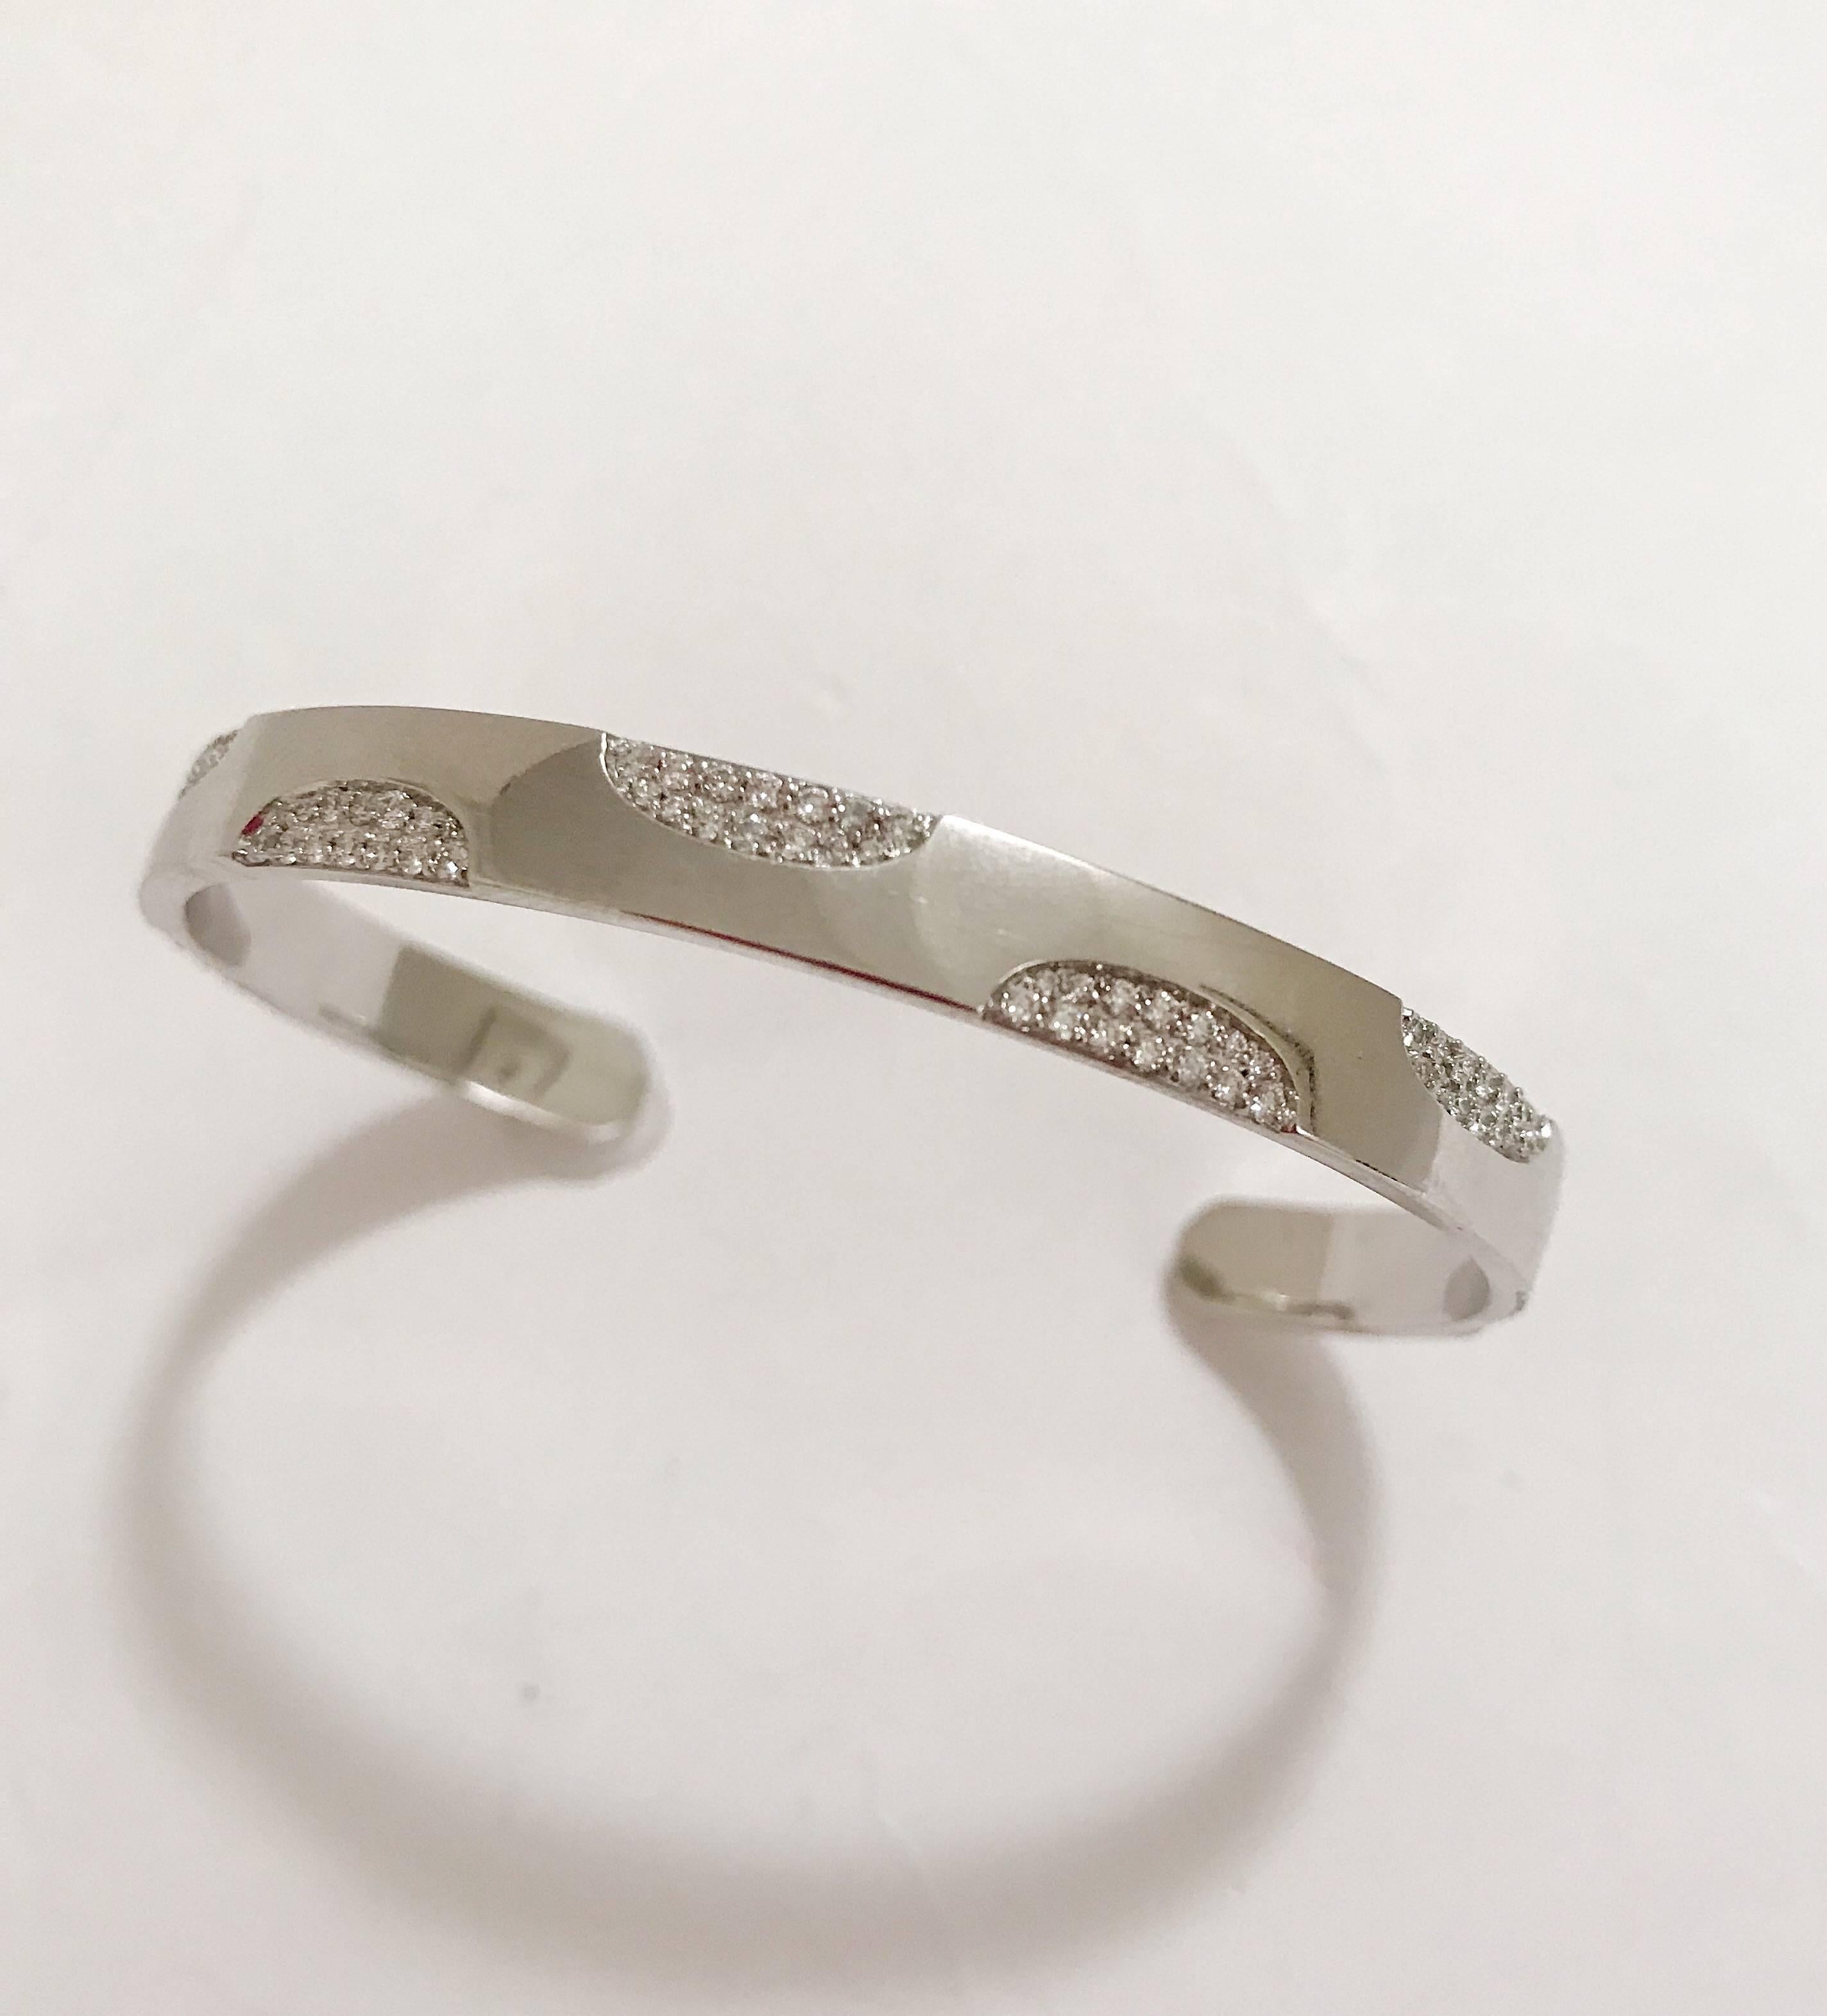 18kt White Gold Polka Dot Diamond Cuff Bracelet, ist eine großartige Ergänzung für die Stapelung Armbänder oder ist schön allein. 

Dieses Armband kann in jeder Goldfarbe hergestellt werden und passt zu allen Handgelenkgrößen. 

Bitte nehmen Sie mit